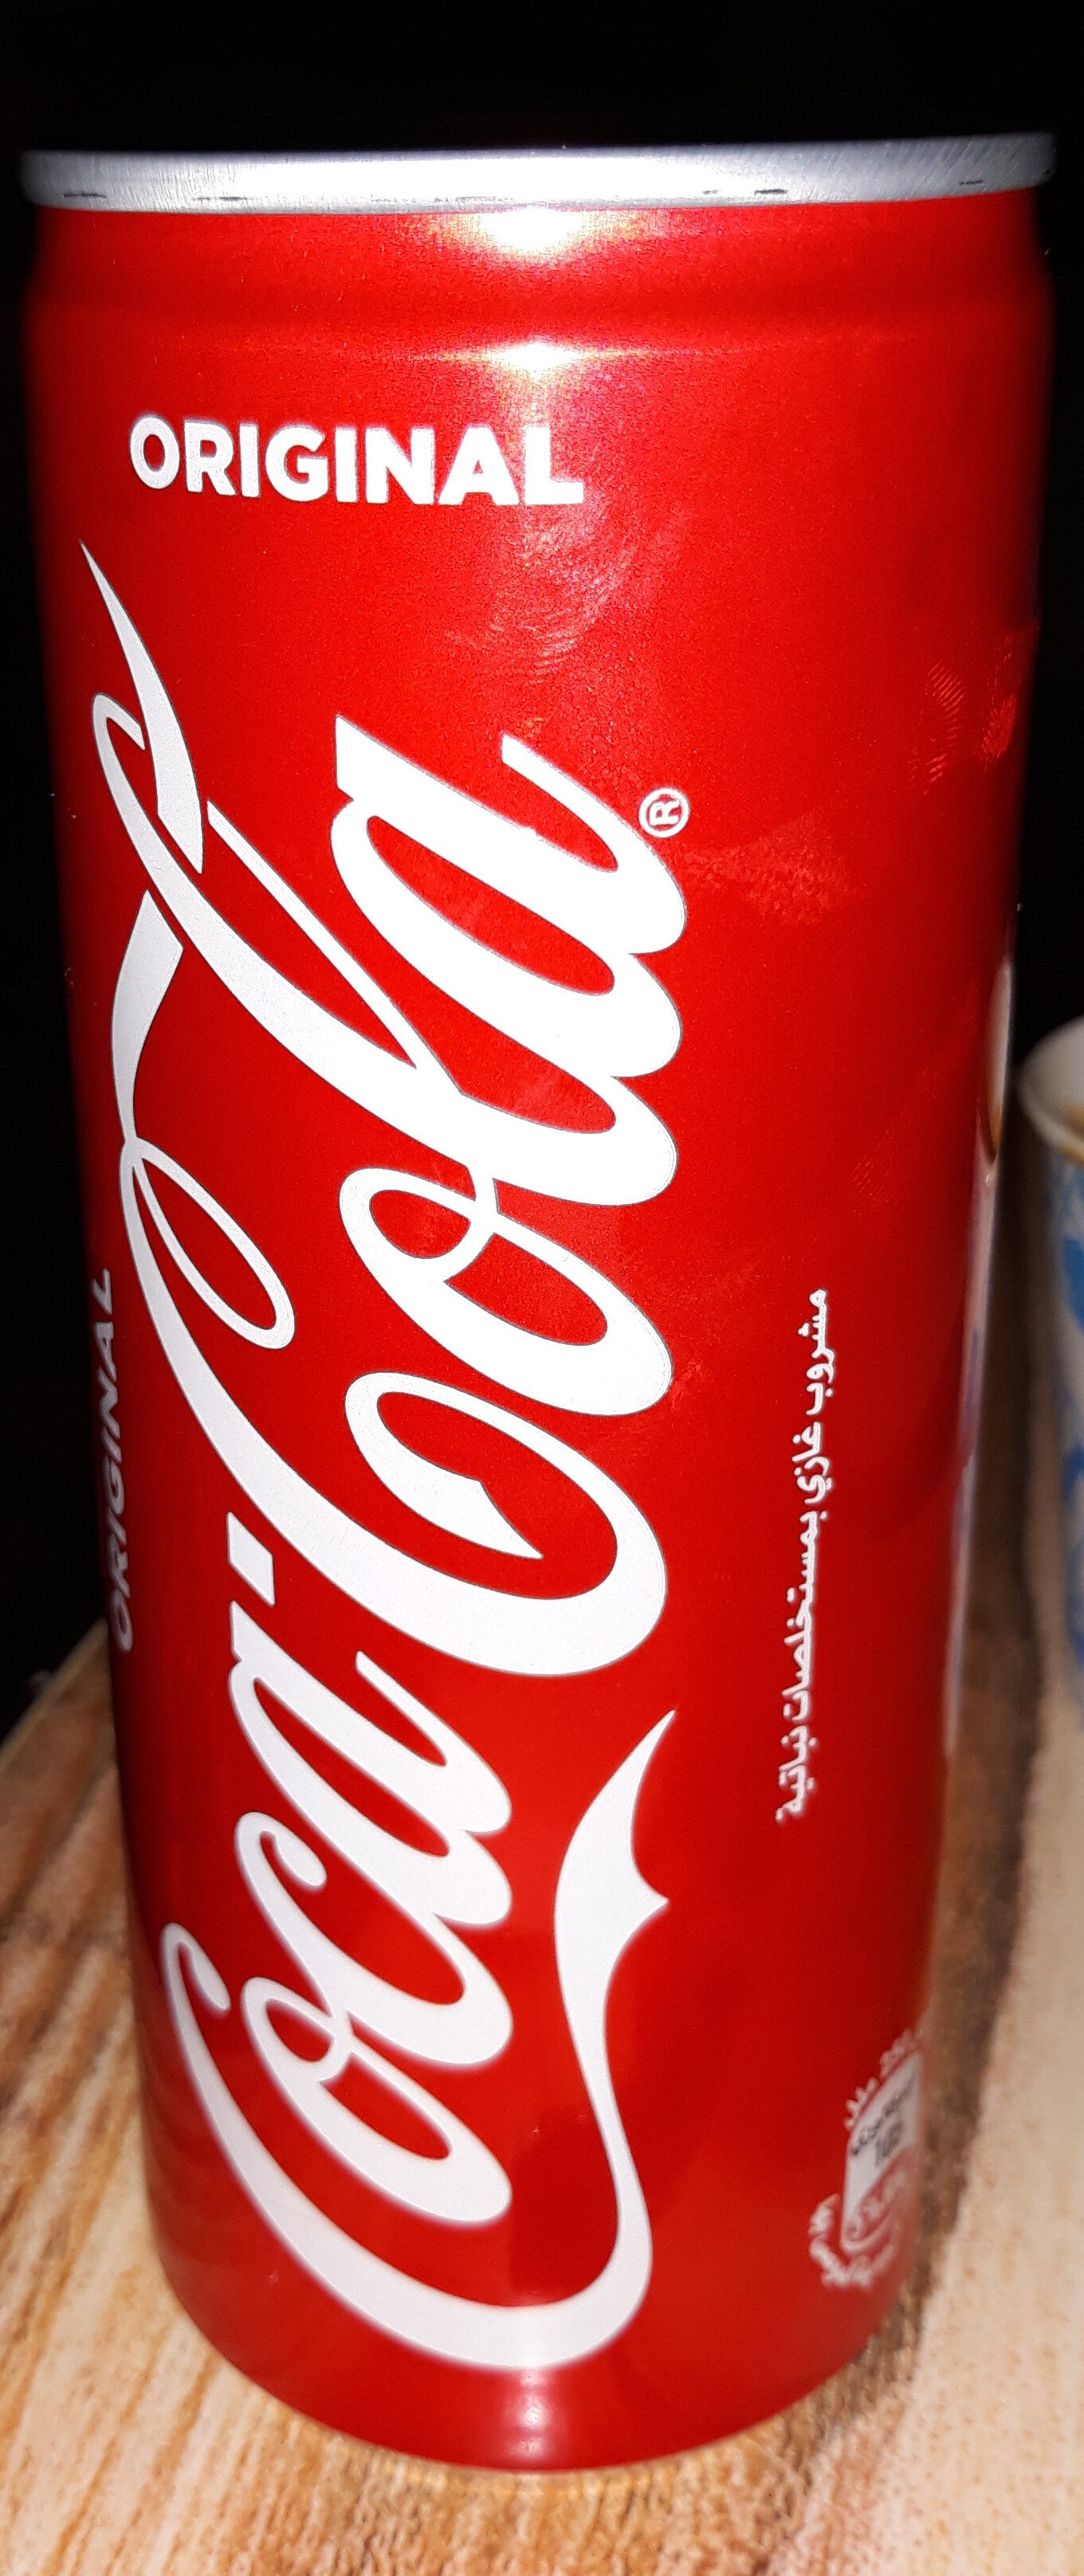 Coca Cola - Product - en